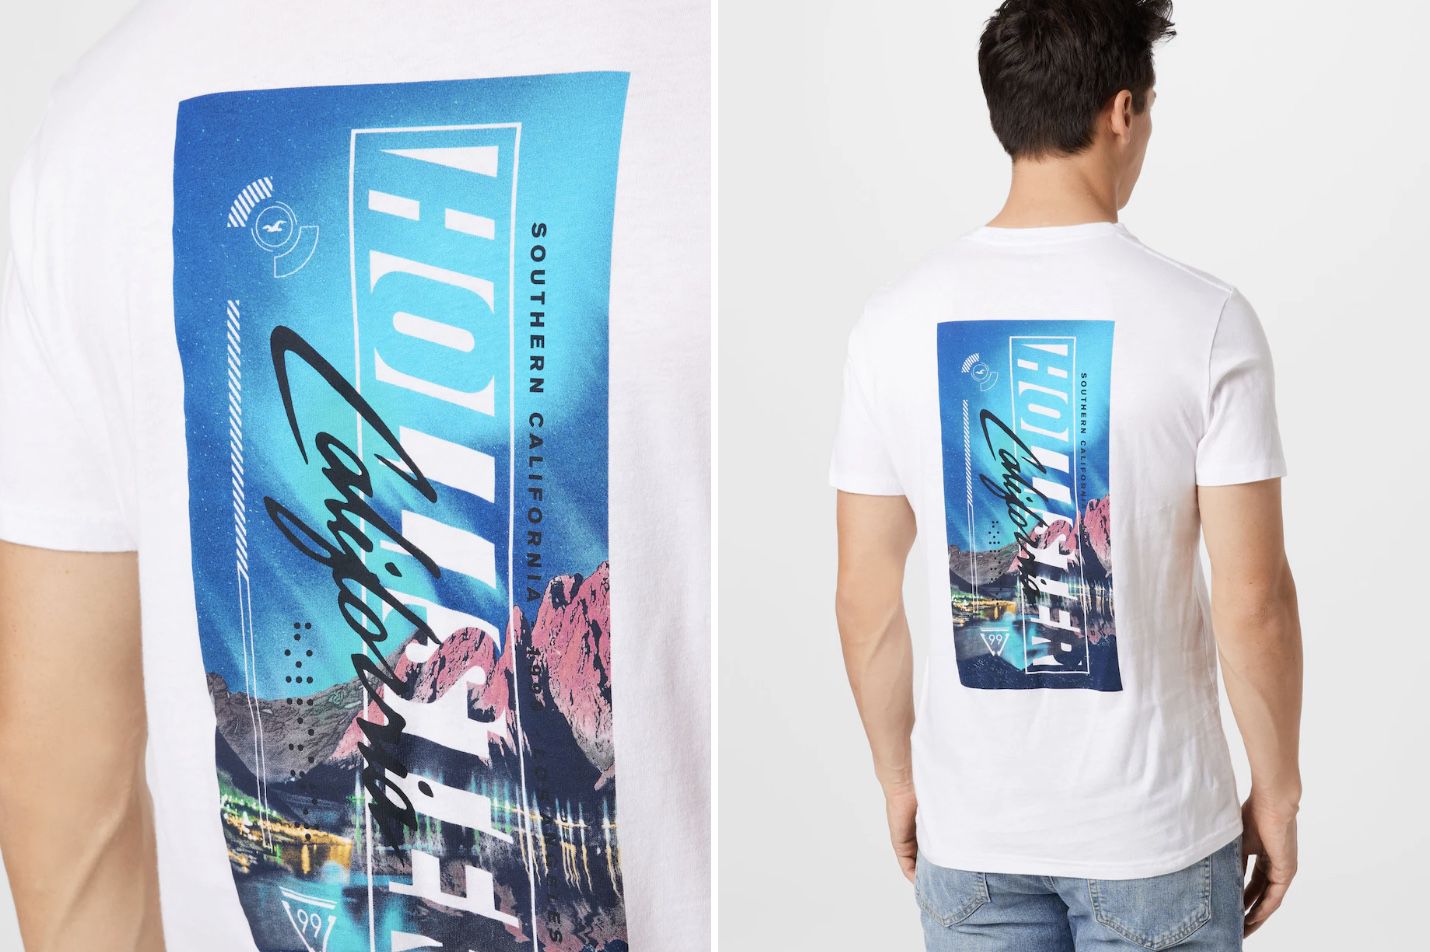 Hollister Herren T Shirt mit großem Rücken Print in Weiß für 7,90€ (statt 13€)